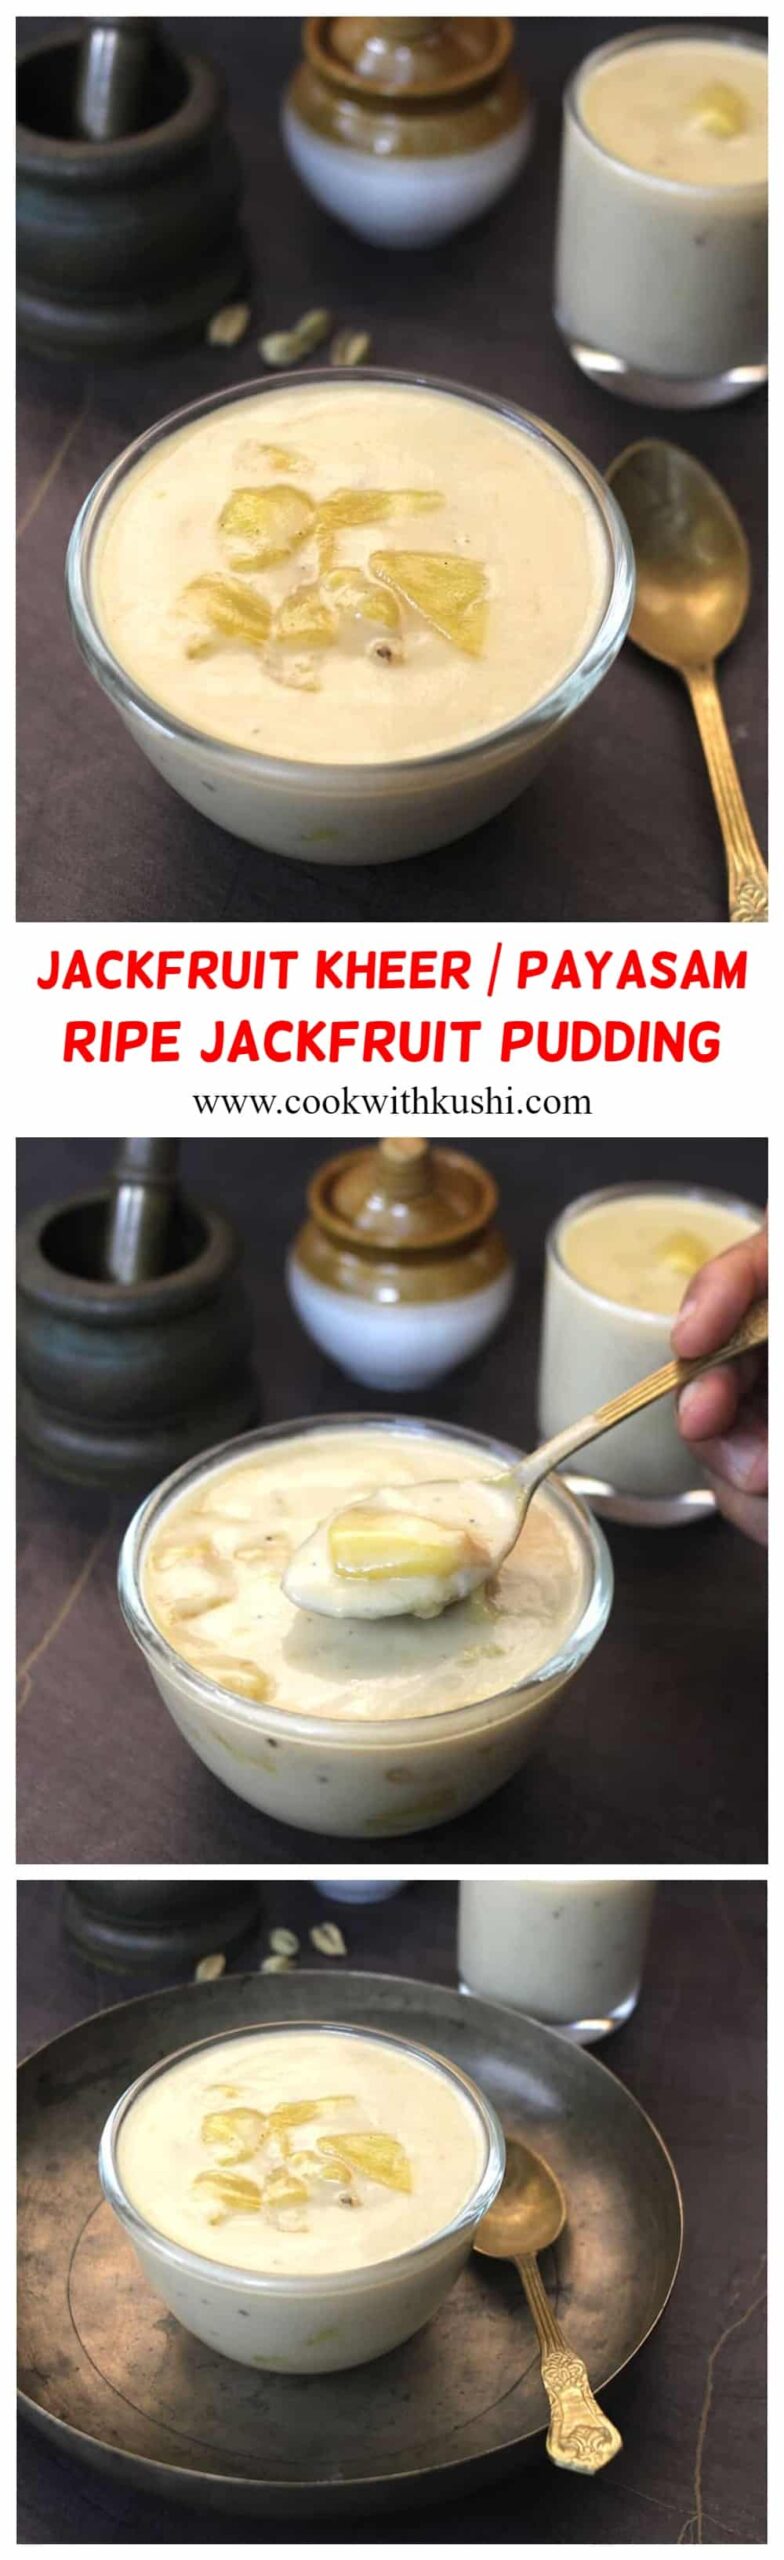 How to make ponsa garai, jackfruit kheer, pudding, payasam